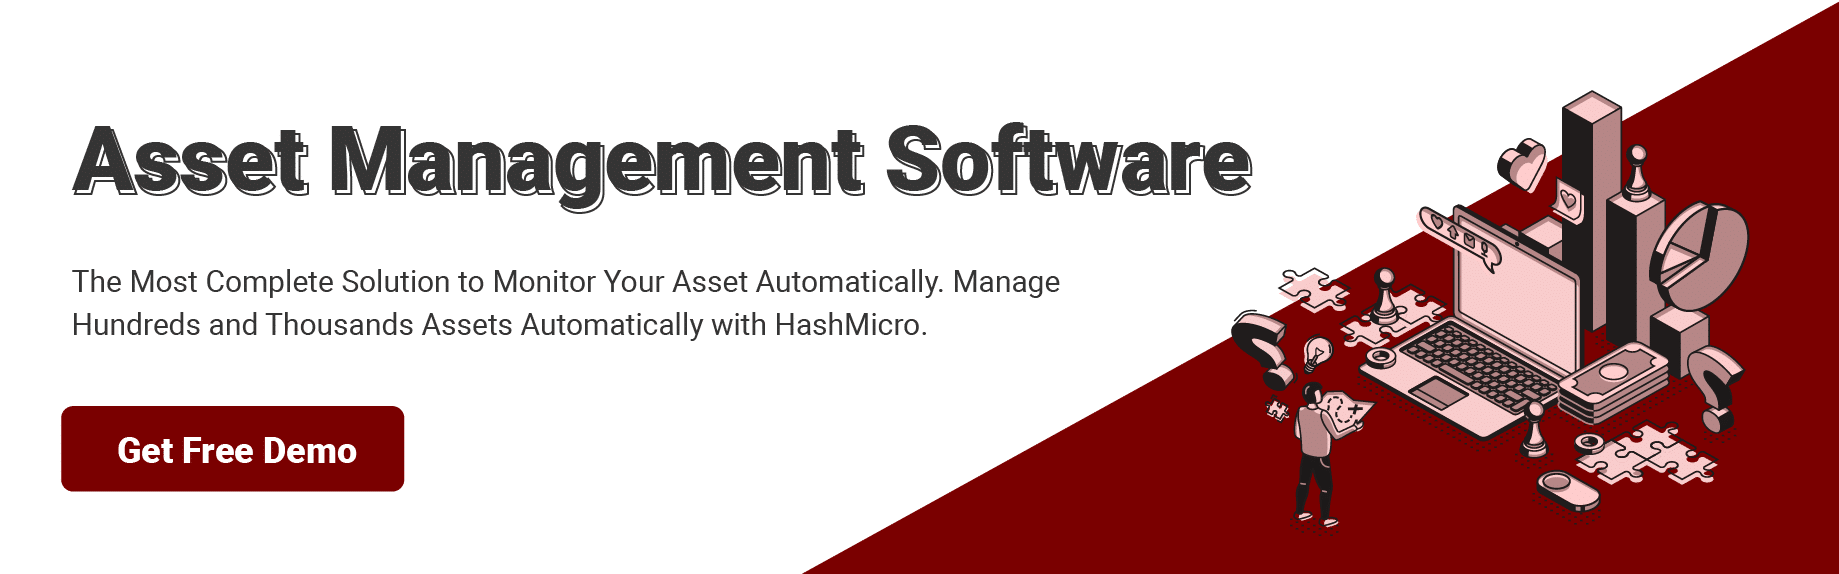 software asset management